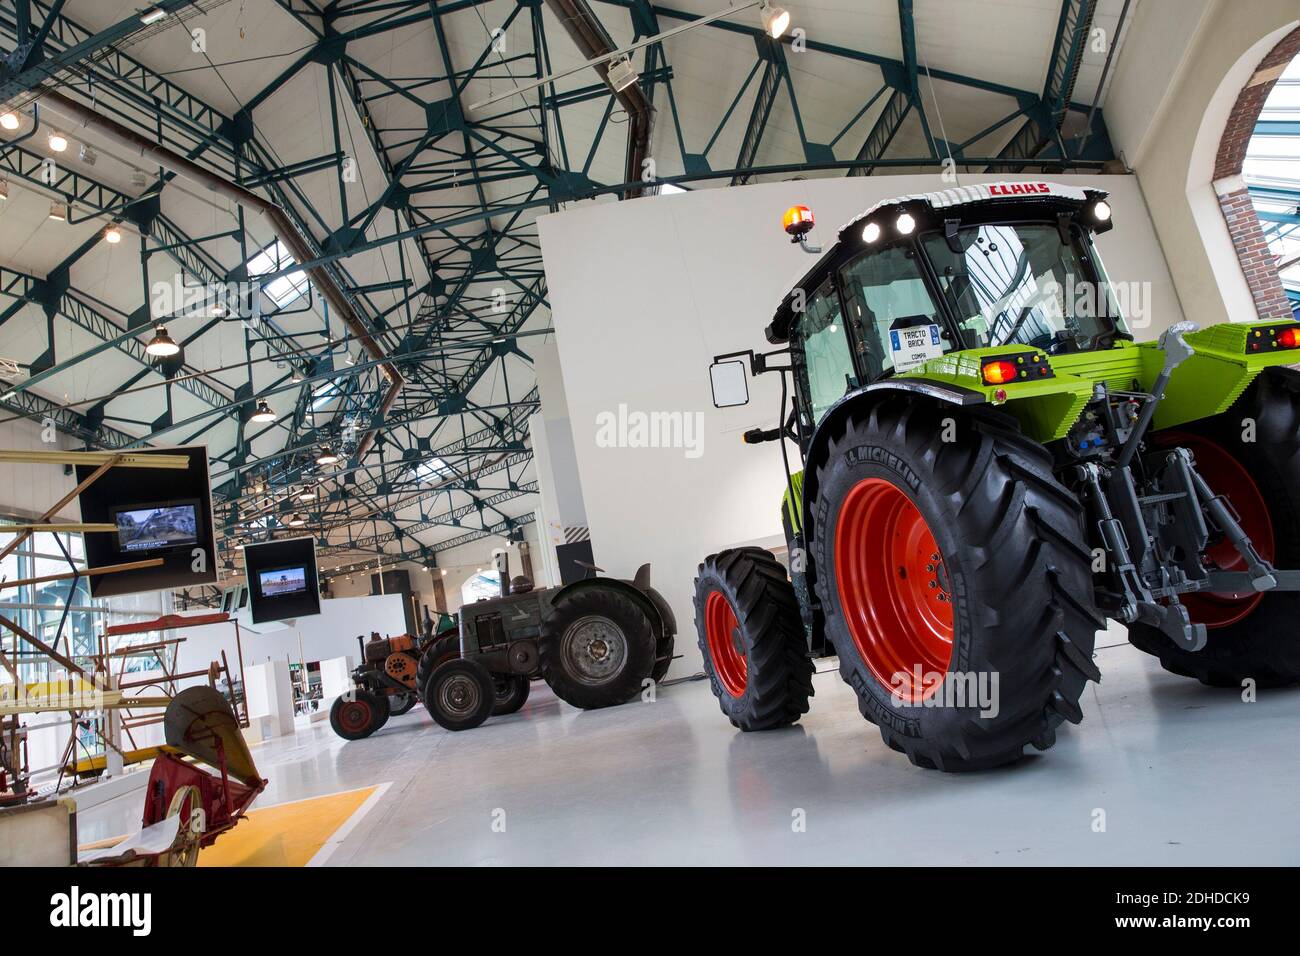 Un tracteur en LEGO, le TractoBrick, construit en 3.500 heures et 800.000  briques LEGO, va faire son entrée au Livre Guinness des records. Il est  exposé au Conservatoire de l'agriculture (Compa) de